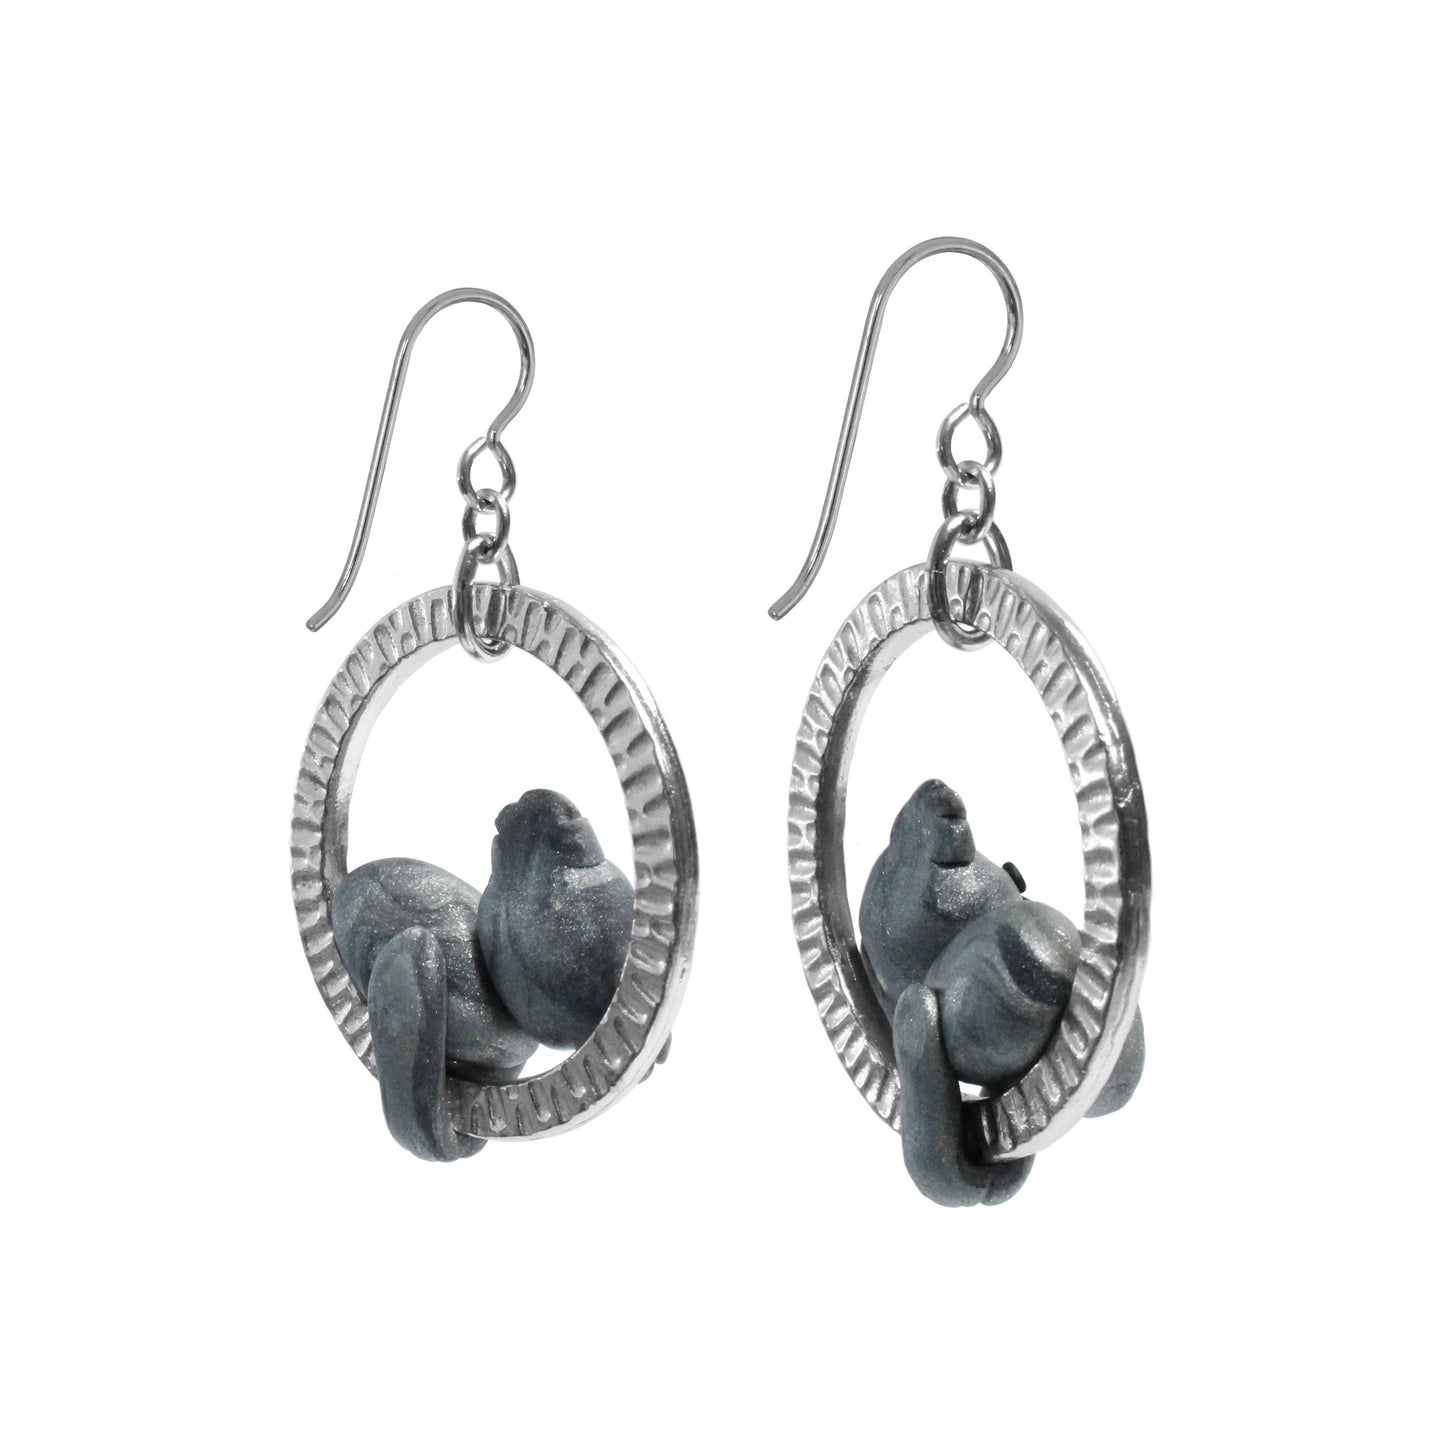 Koala Earrings / 50mm length / sterling silver hook earwires